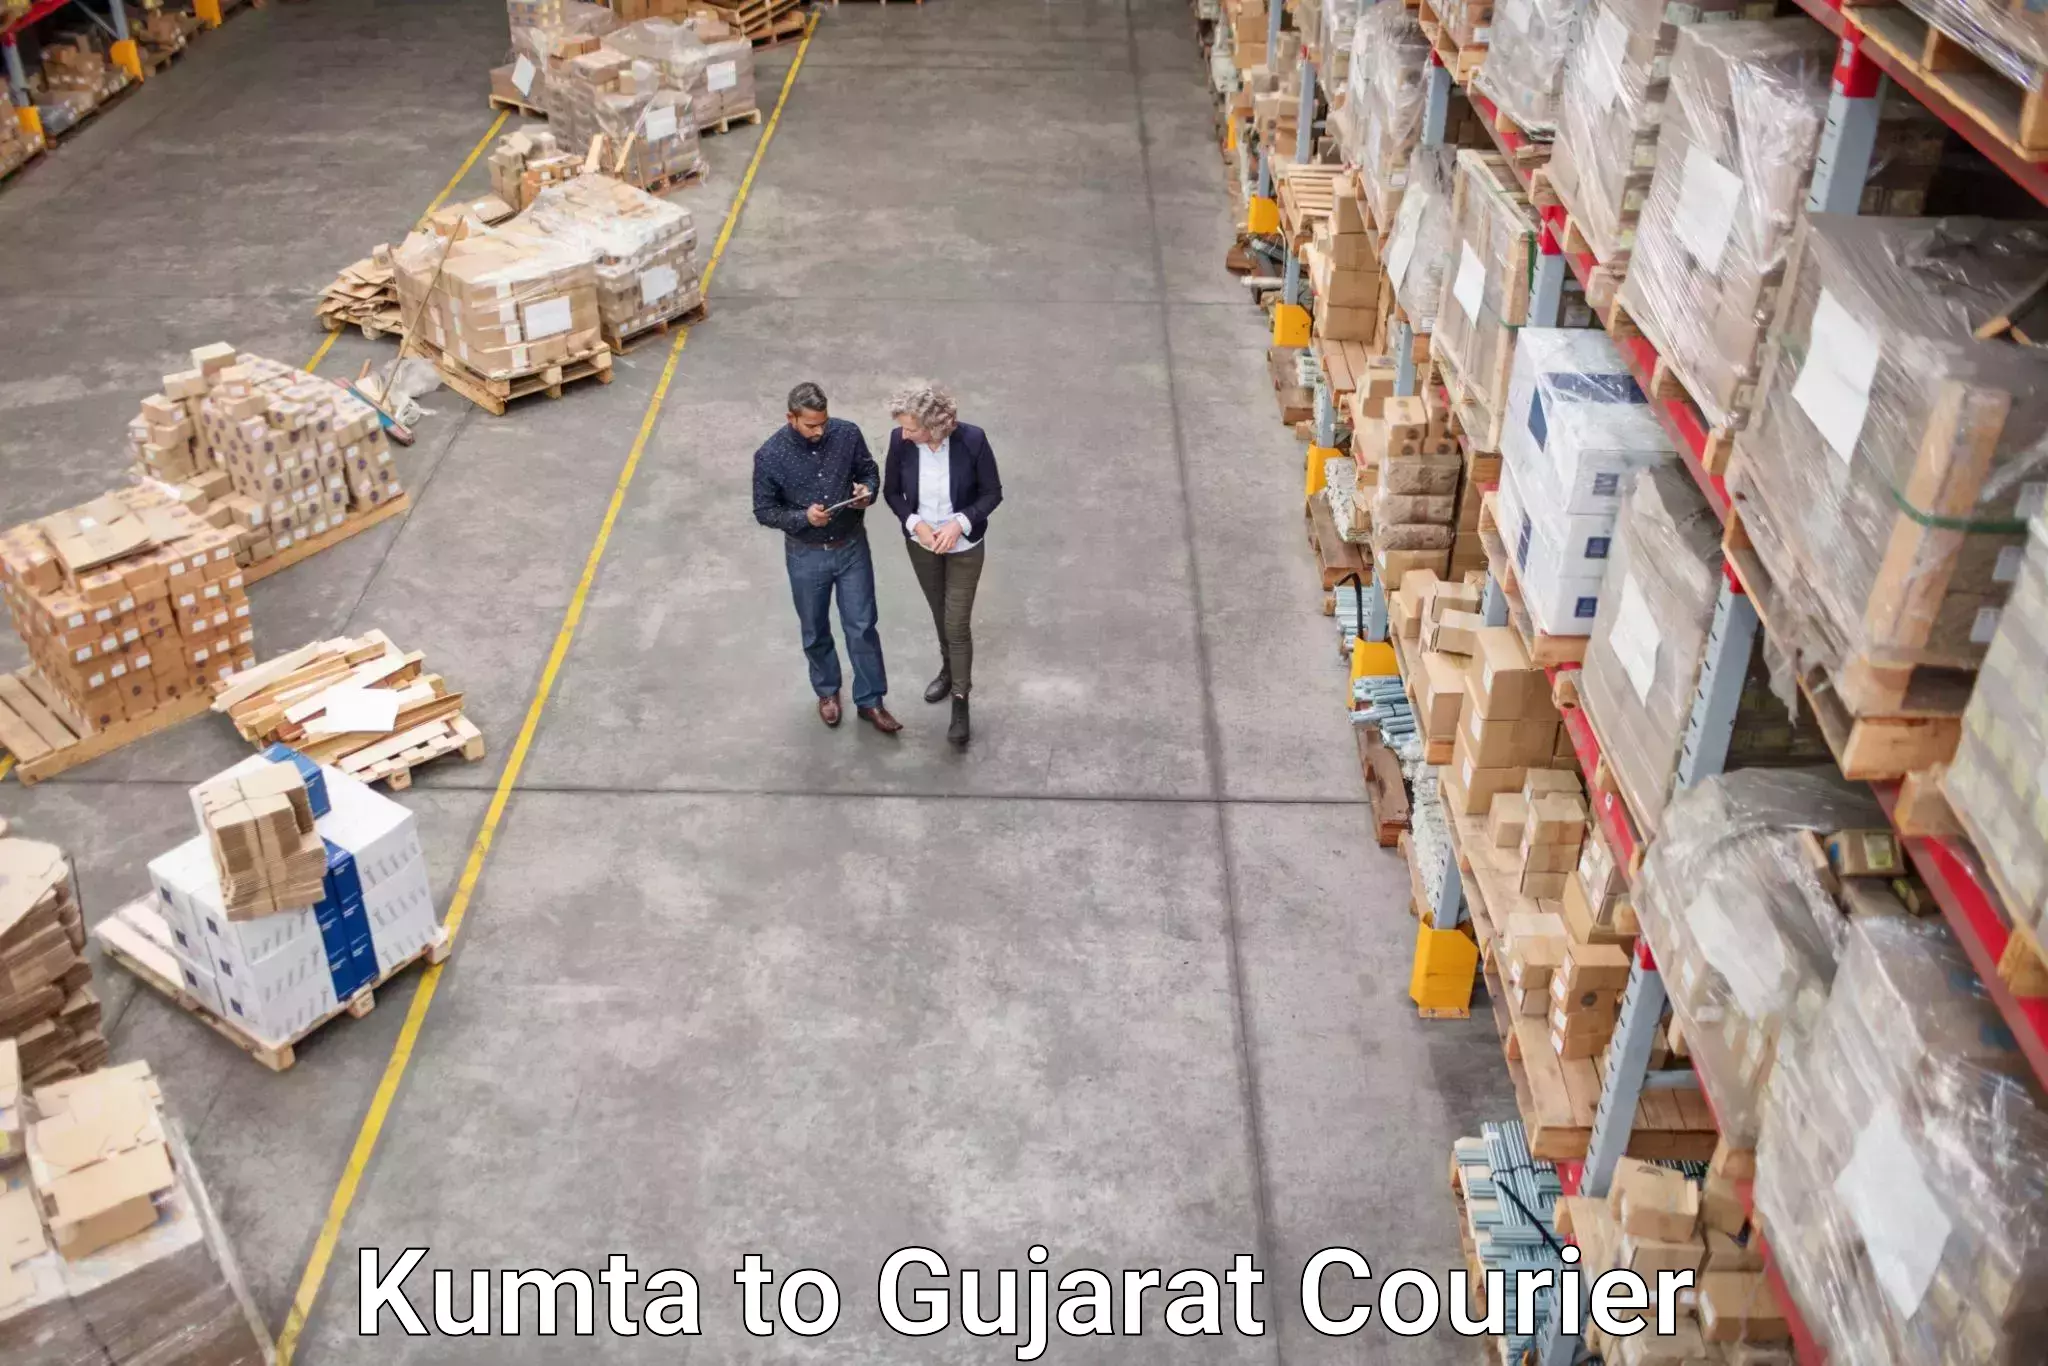 Customer-centric shipping in Kumta to Dharmasala